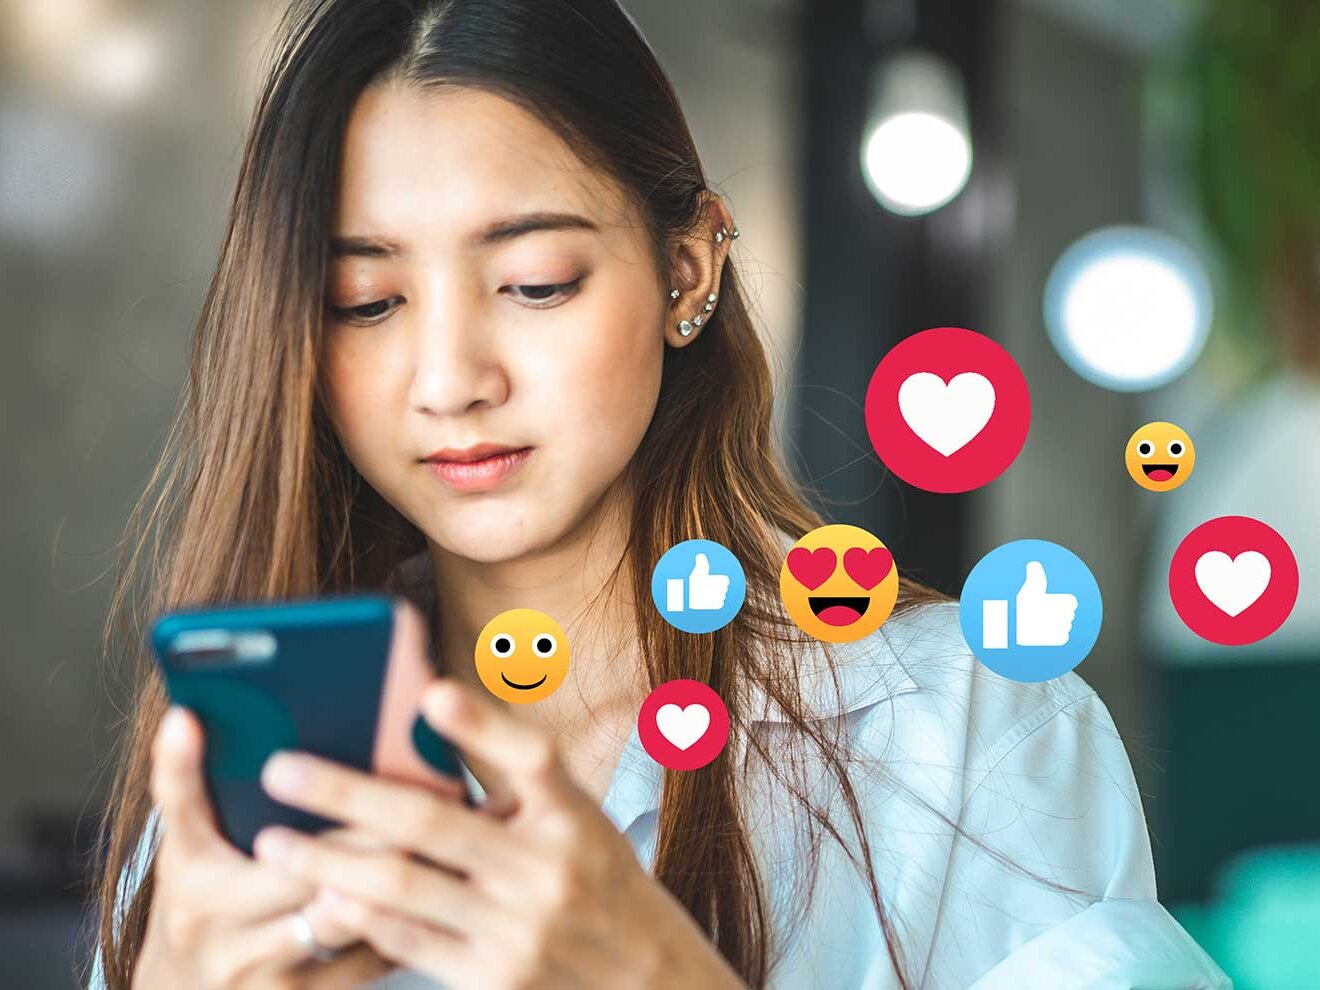 Ein Mädchen schaut auf ihr Handy, während verschiedene Symbole und Emojis aus dem Handy schweben.